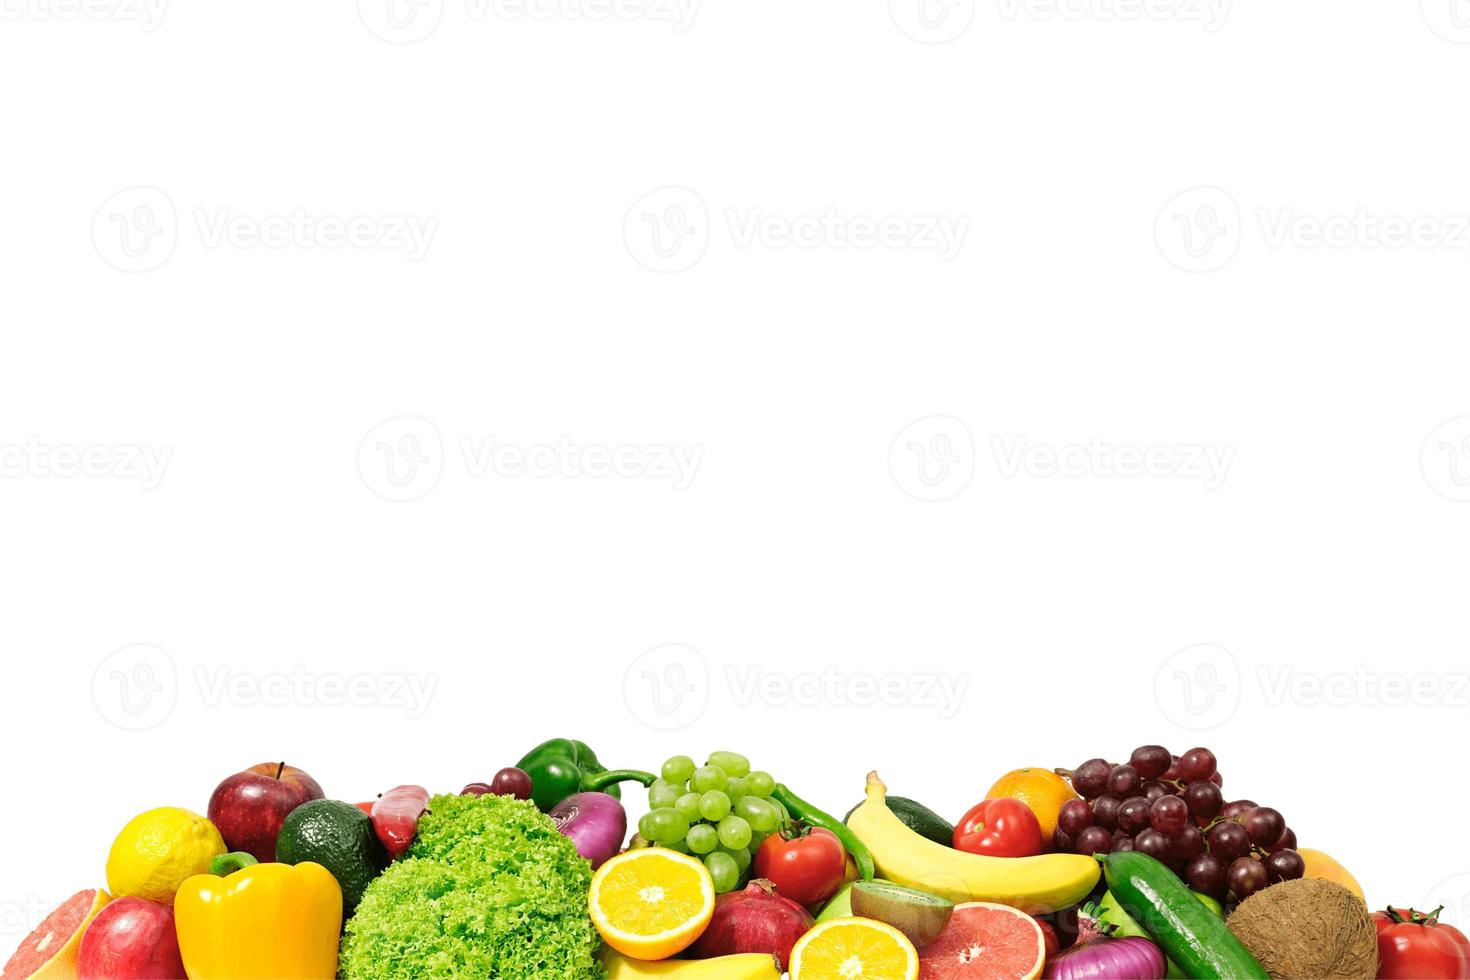 sfondo di cibo, sfondo di frutta e verdura con spazio copia per testo, ingredienti alimentari freschi per cucinare, vista dall'alto con spazio copia, banner pubblicitario alimentare foto